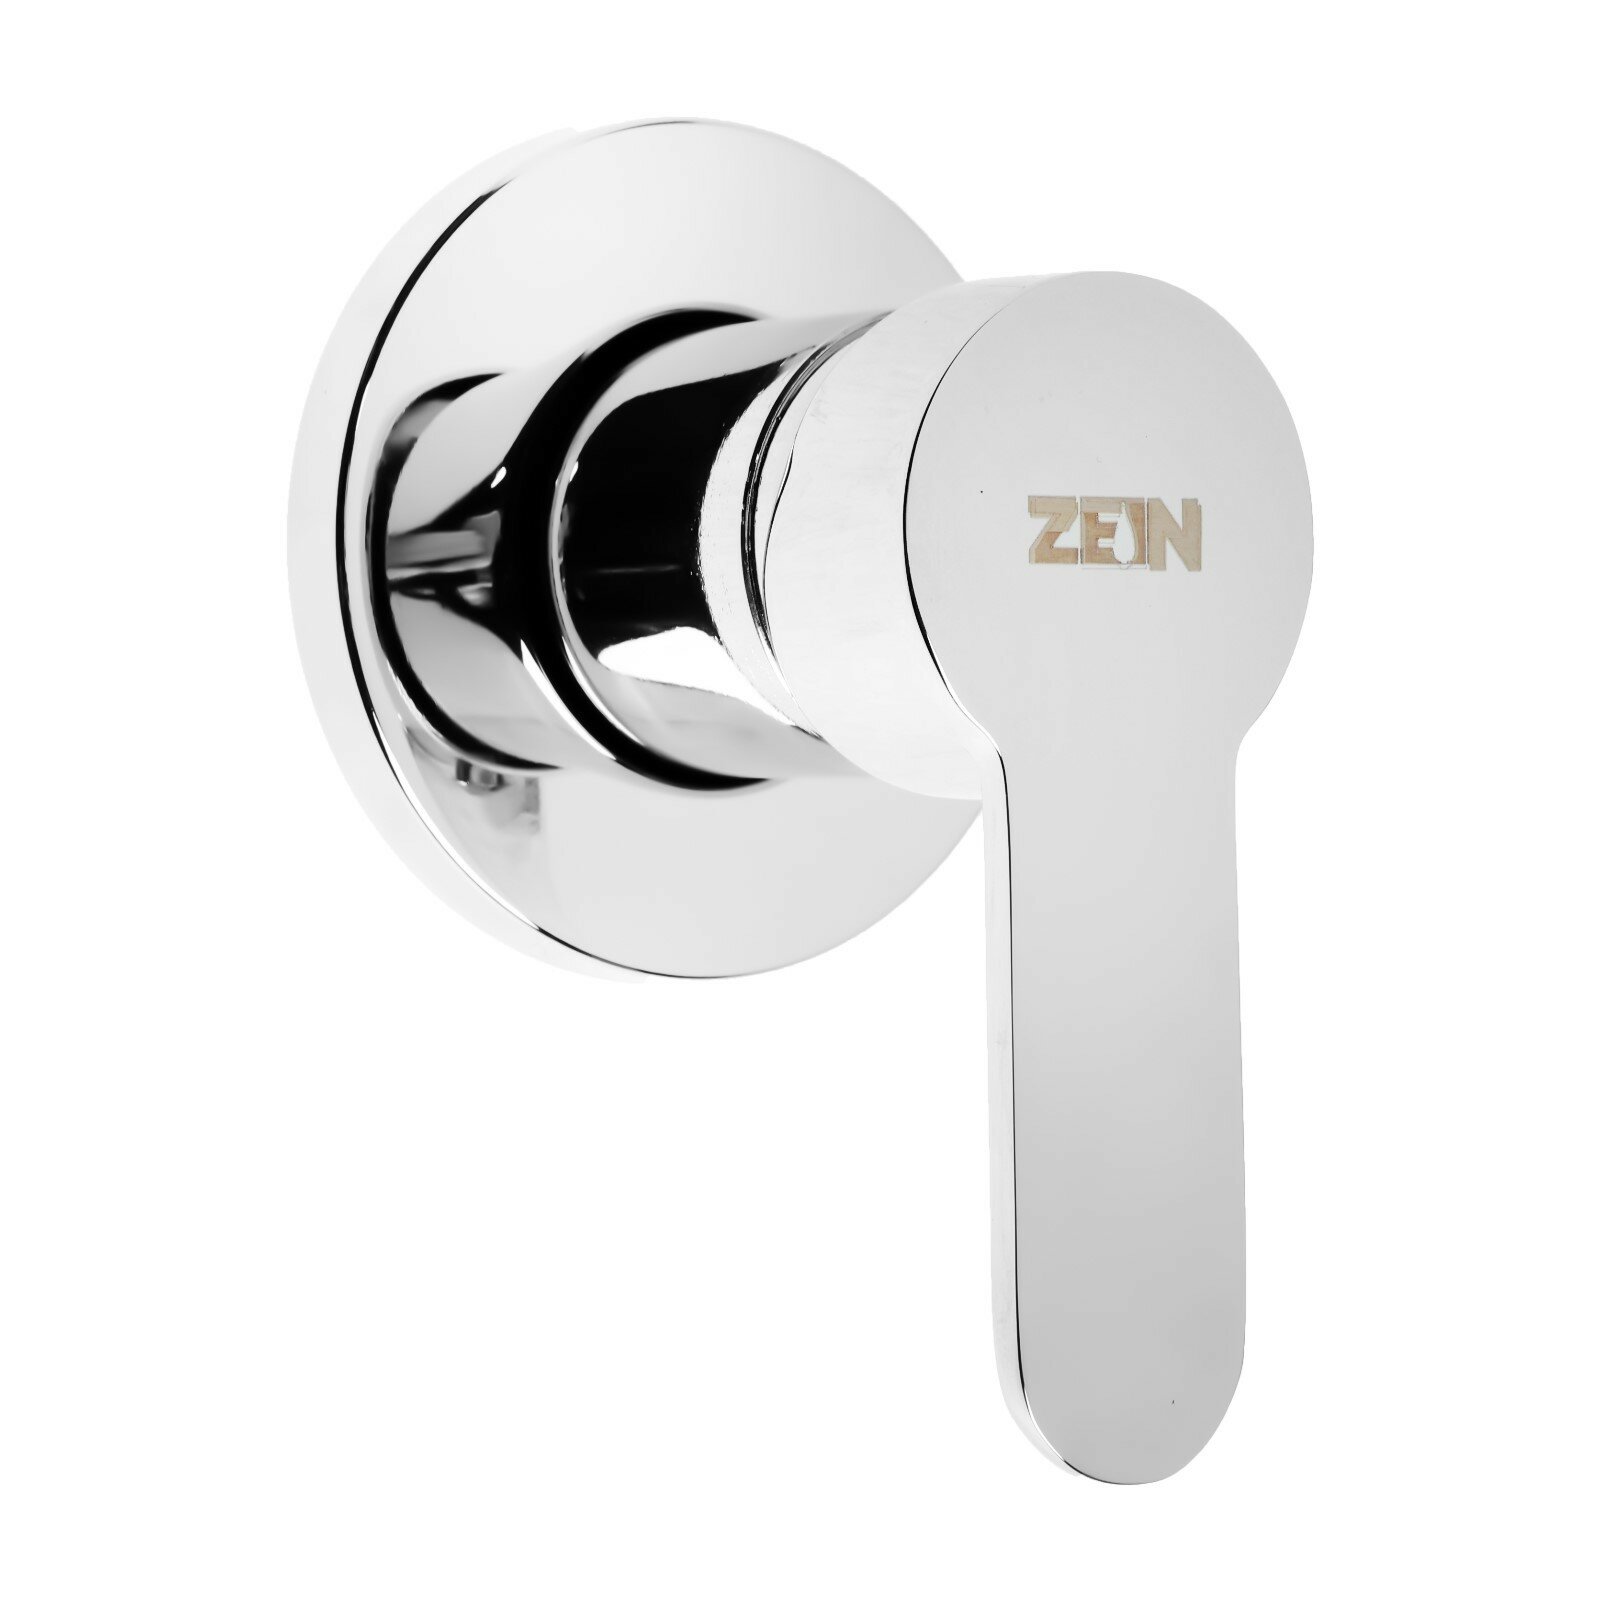 Смеситель для душевой кабины ZEIN скрытый монтаж ручка картридж 35 мм латунь хром